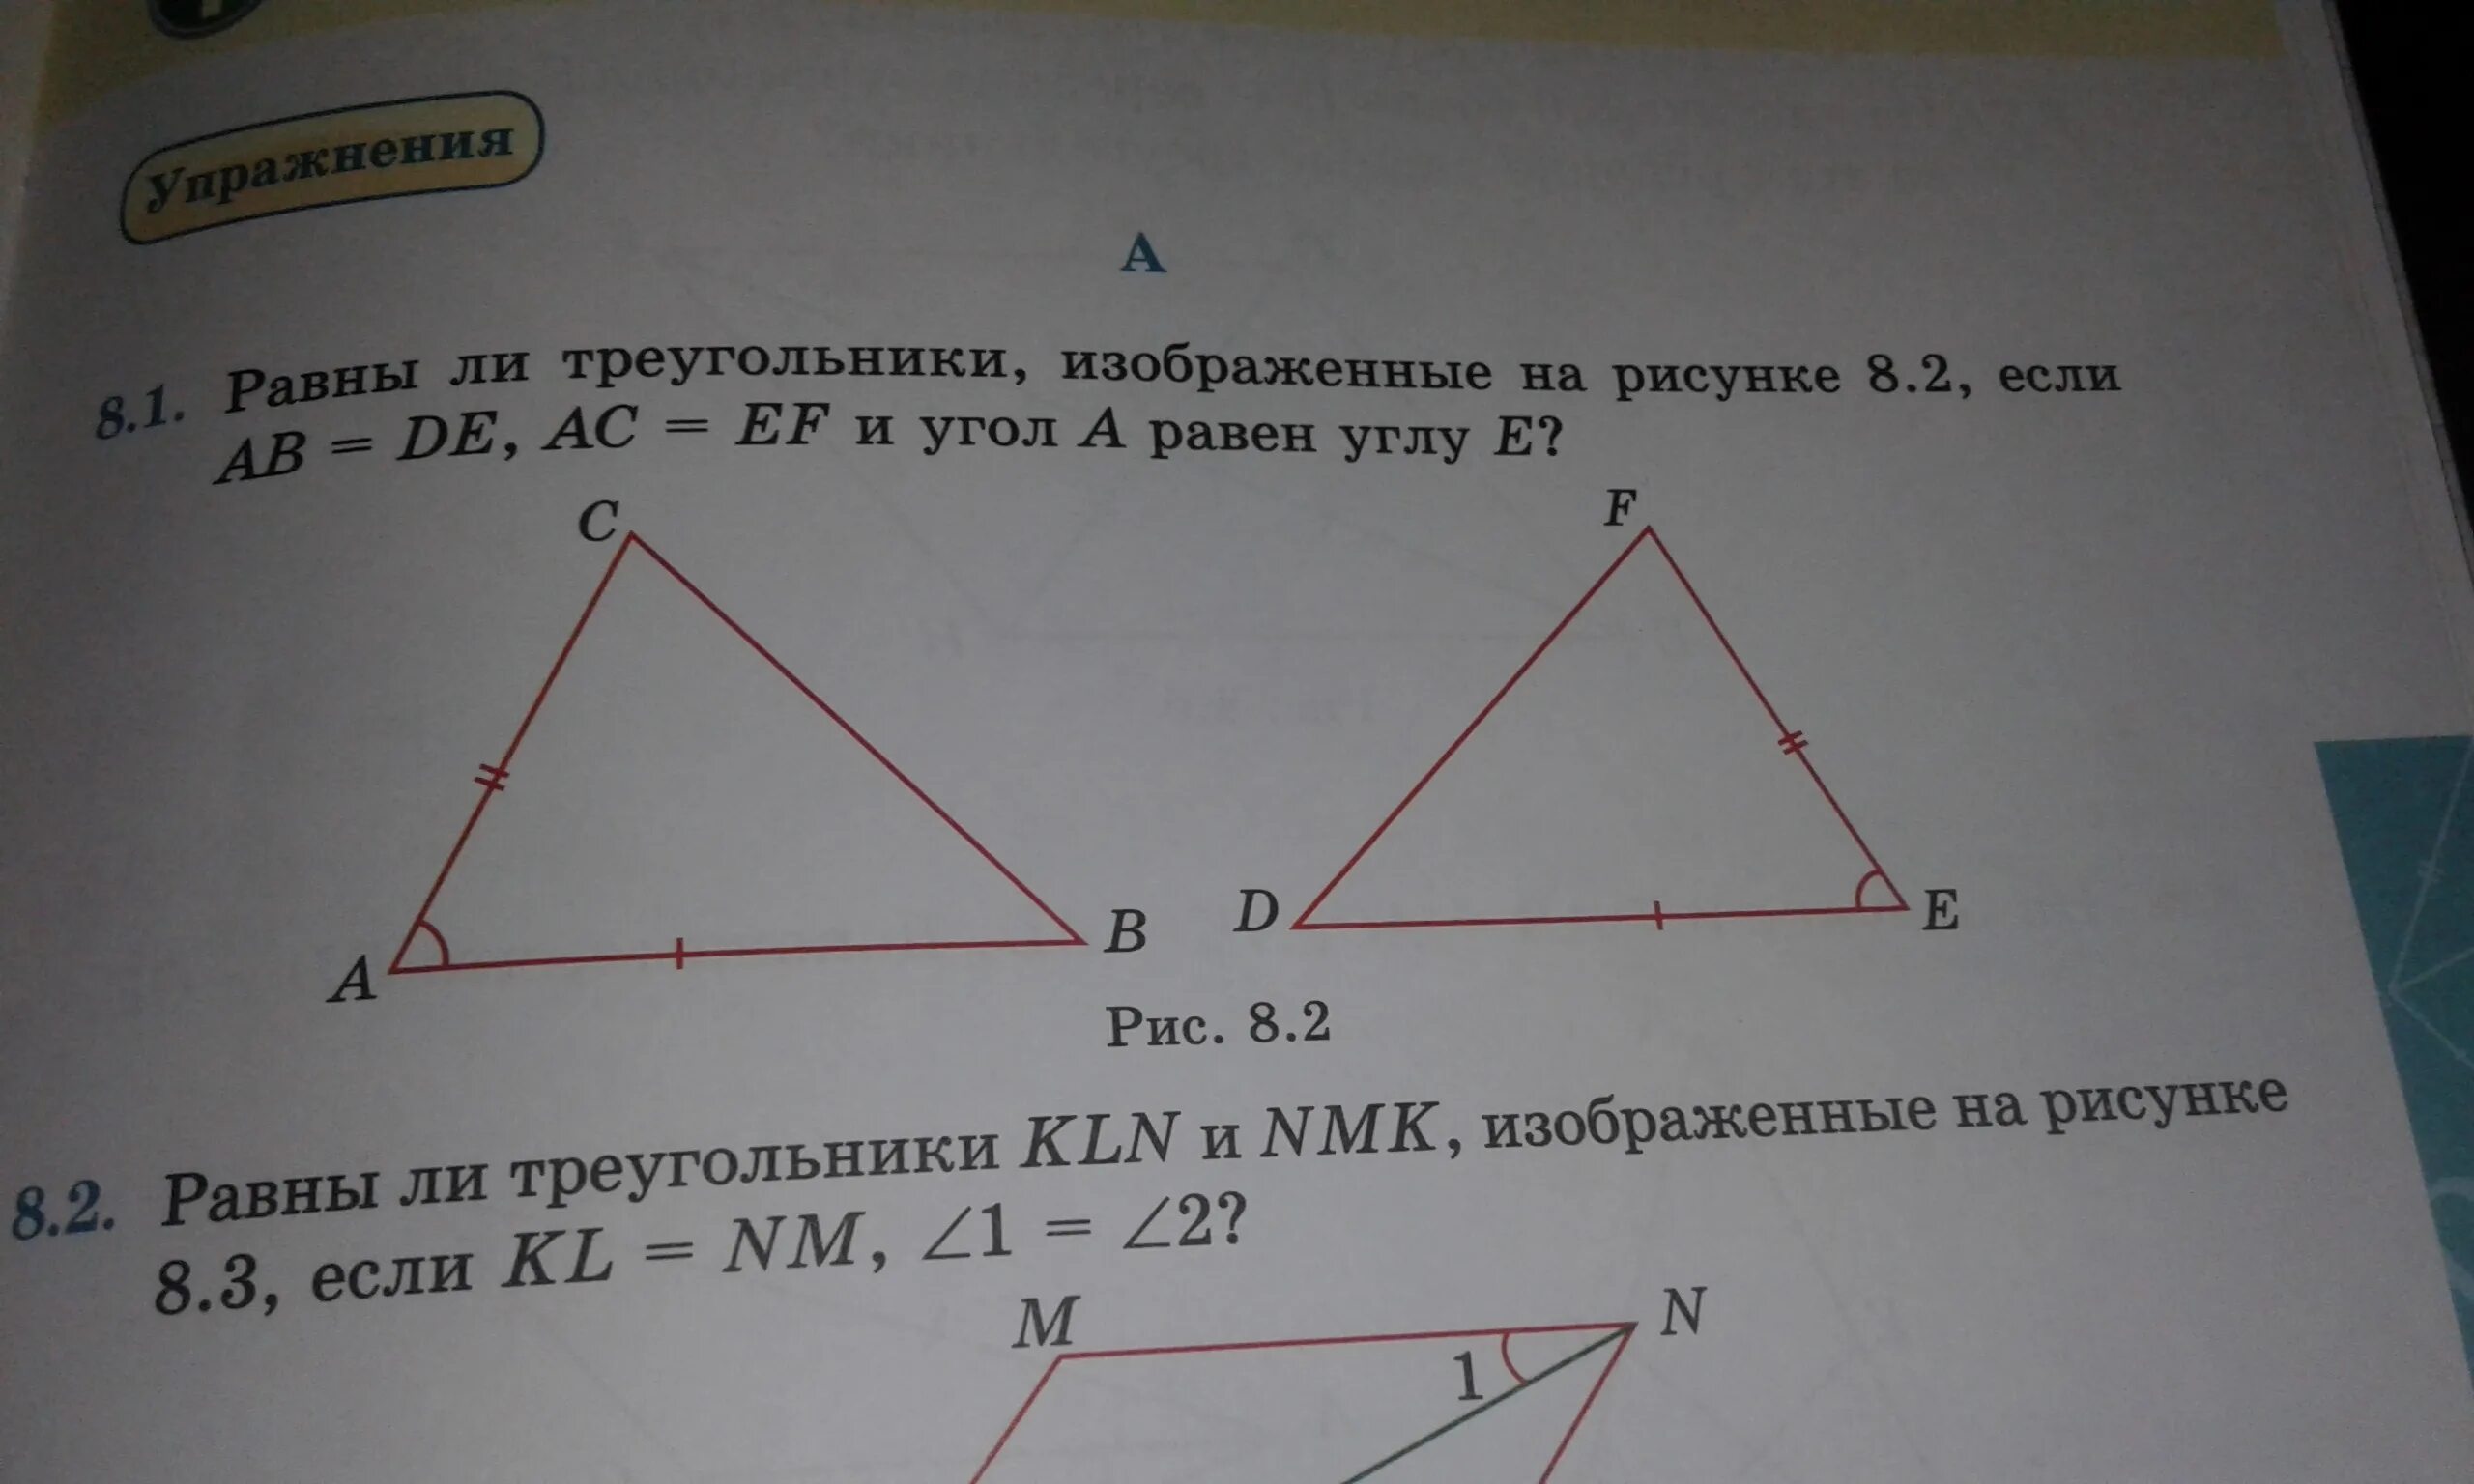 Б равен треугольник ц о д. Треугольники изображенные на рисунке. Равные треугольники картинки. Подобны ли треугольники изображенные на рисунке. Треугольник с двумя углами.